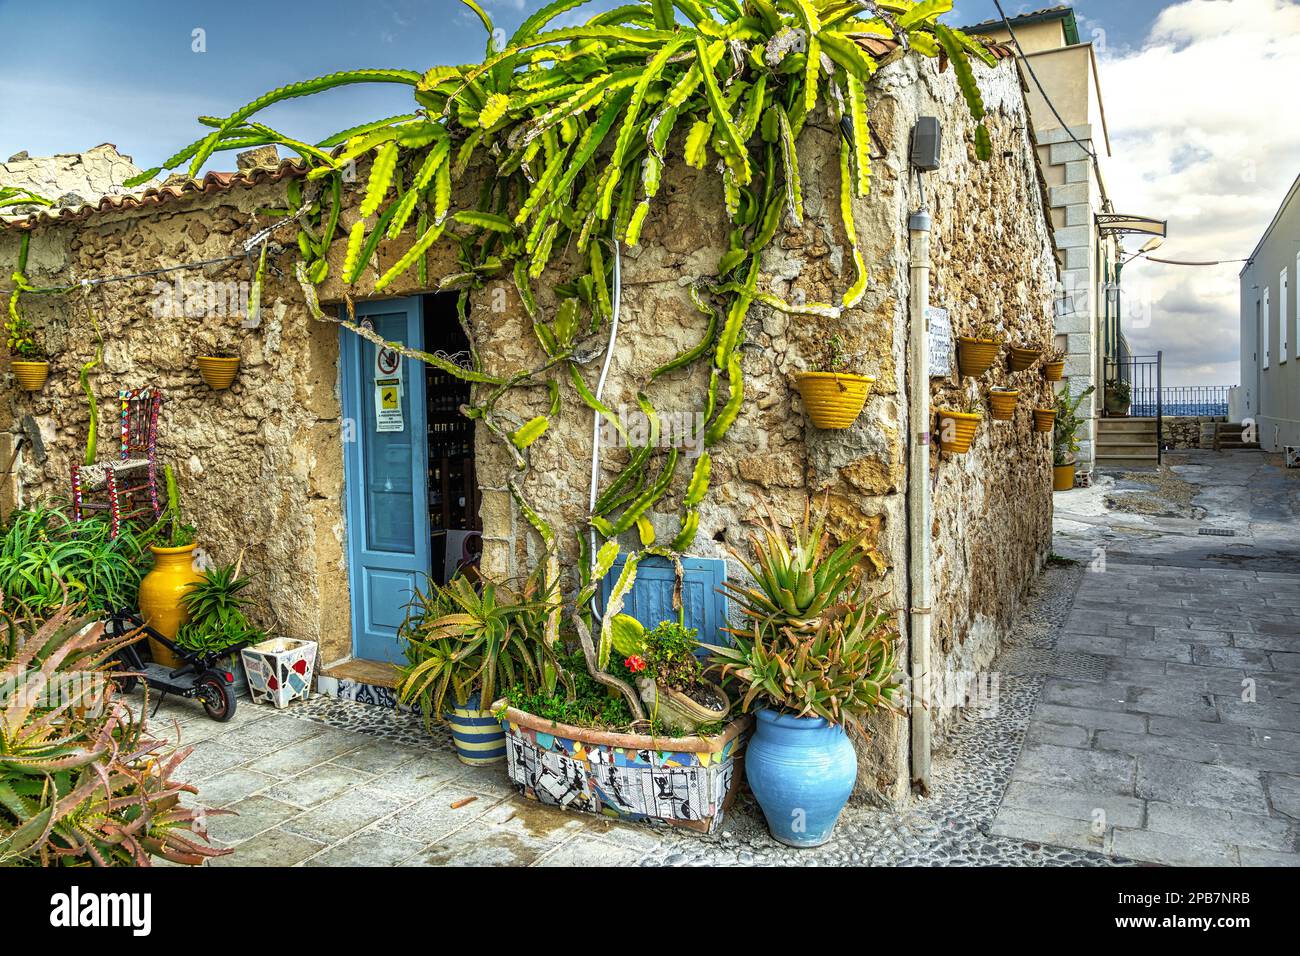 Vislumbra el pueblo costero siciliano de Marzamemi con las casas que ahora se han convertido en restaurantes y tiendas de recuerdos. Marzamemi, Sicilia Foto de stock